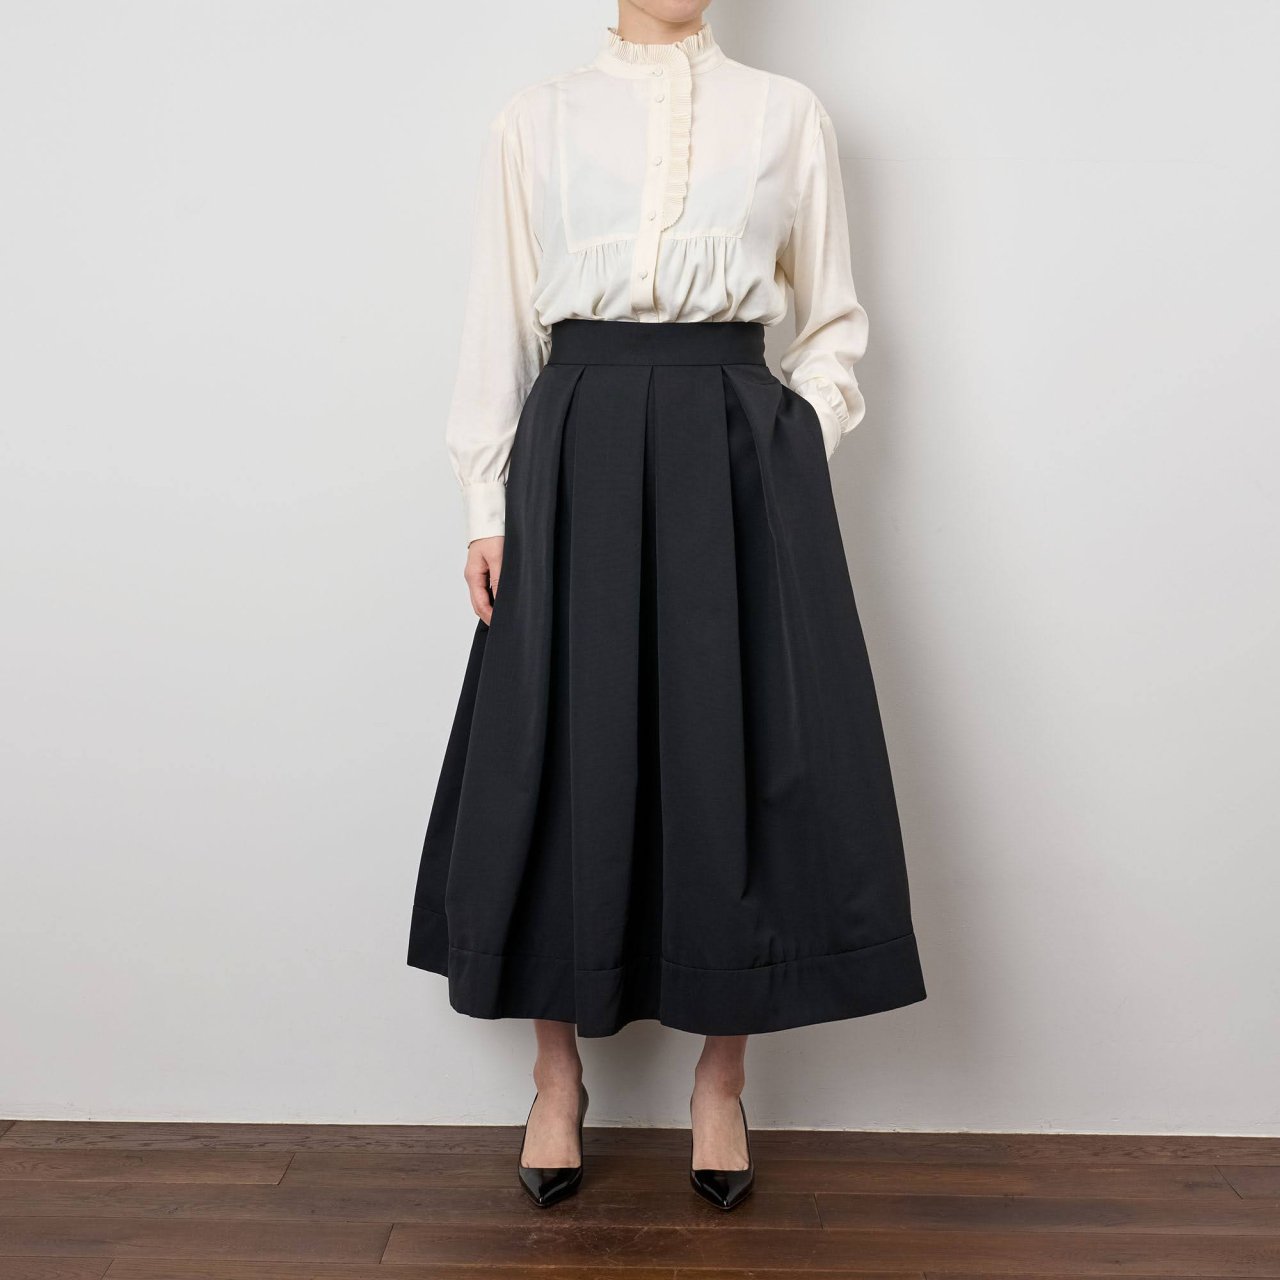 Pale Jute<BR>Basic skirt<BR>black